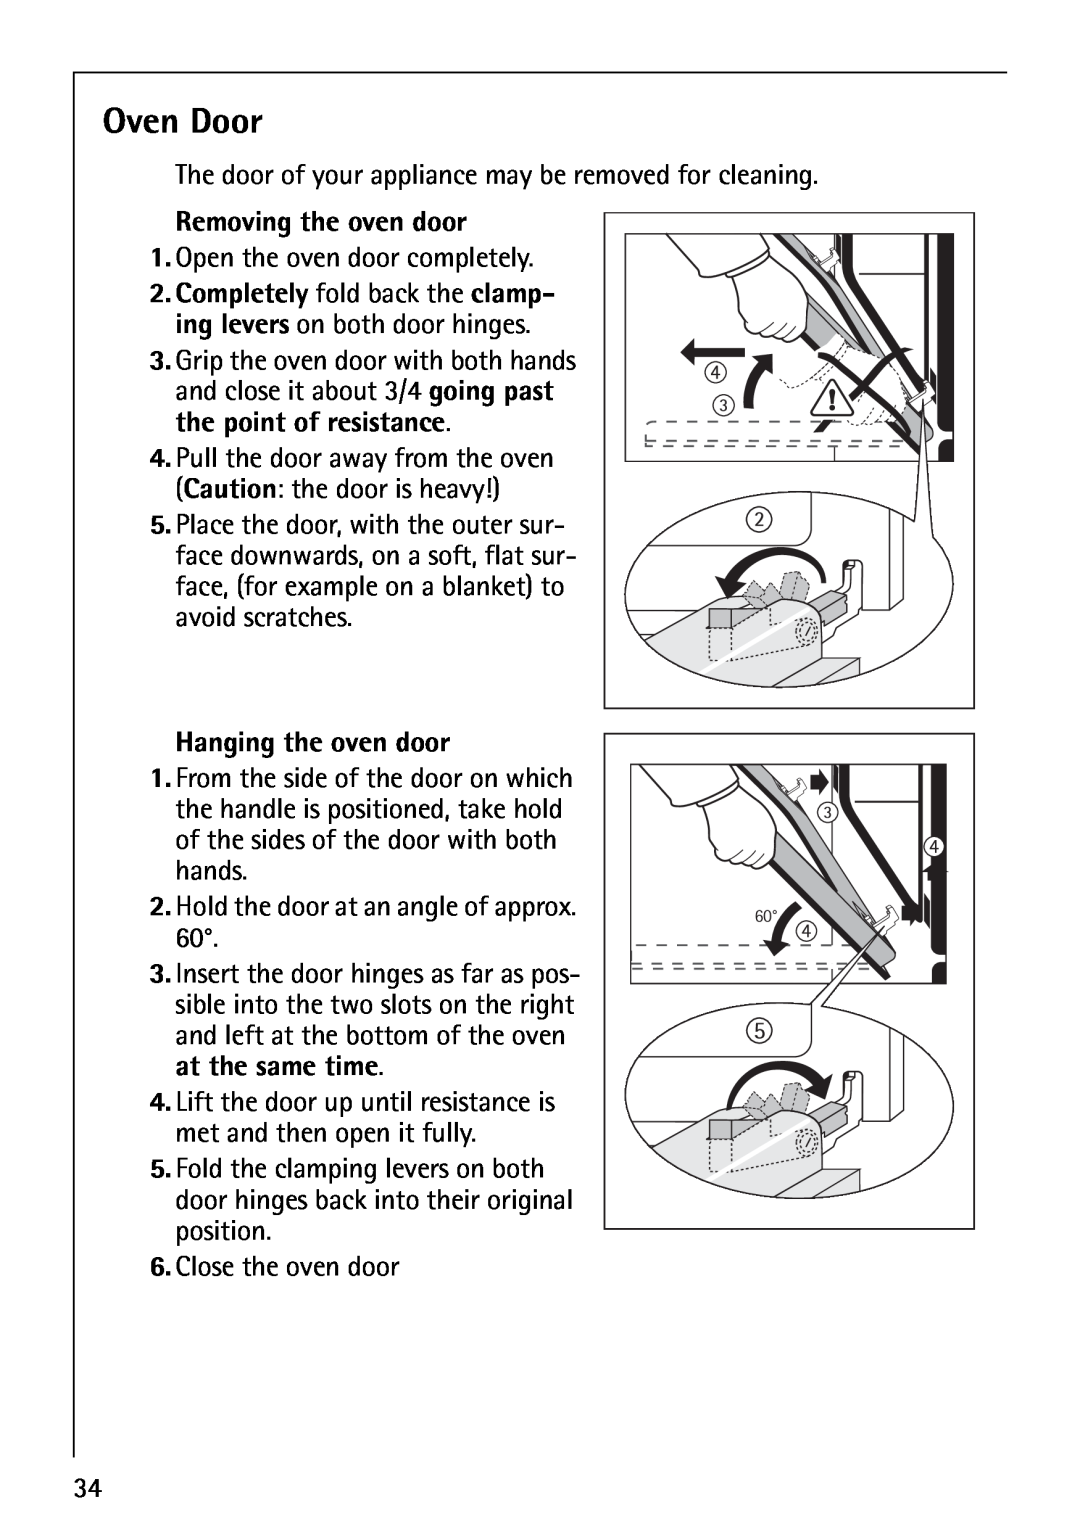 AEG B1180-4 manual Oven Door, Removing the oven door, Hanging the oven door 